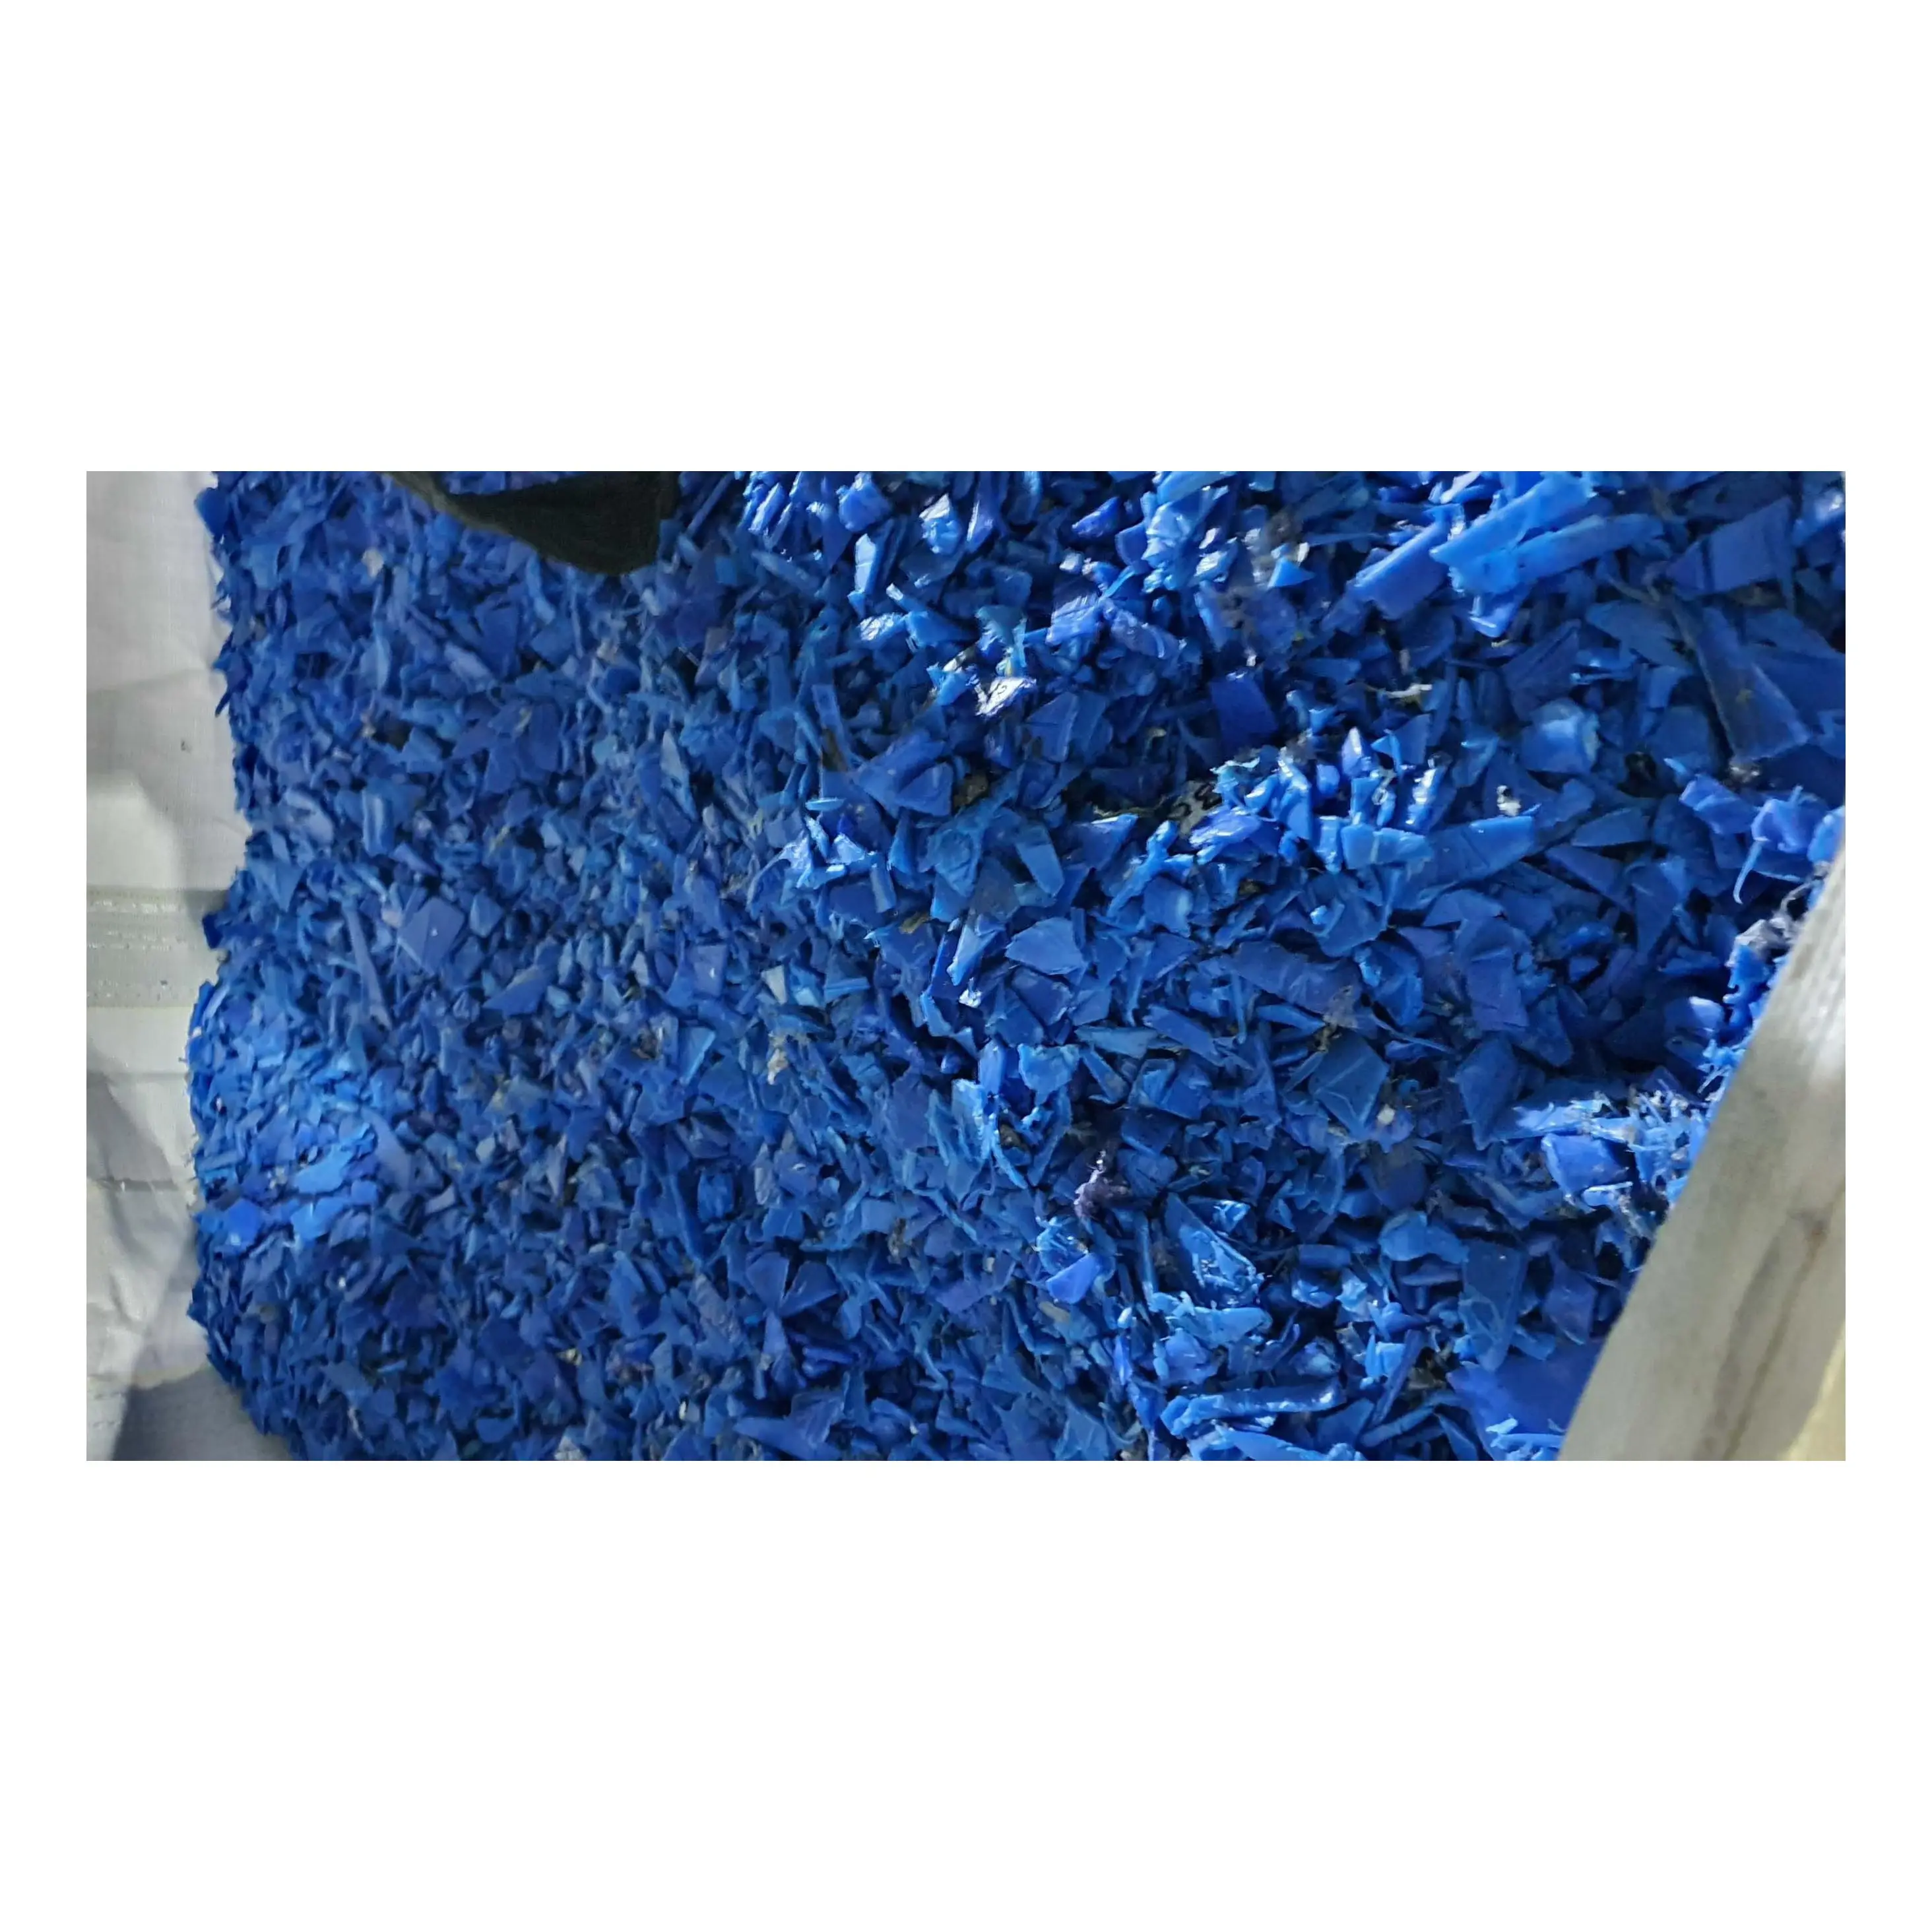 أعلى جودة أسطوانات مطحنة/ أسطوانات زرقاء من البولي إيثيلين عالي الكثافة / أسطوانات من البولي إيثيلين عالي الكثافة Sc قوارير بلاستيكية من البولي إيثيلين عالي الكثافة مطحنة